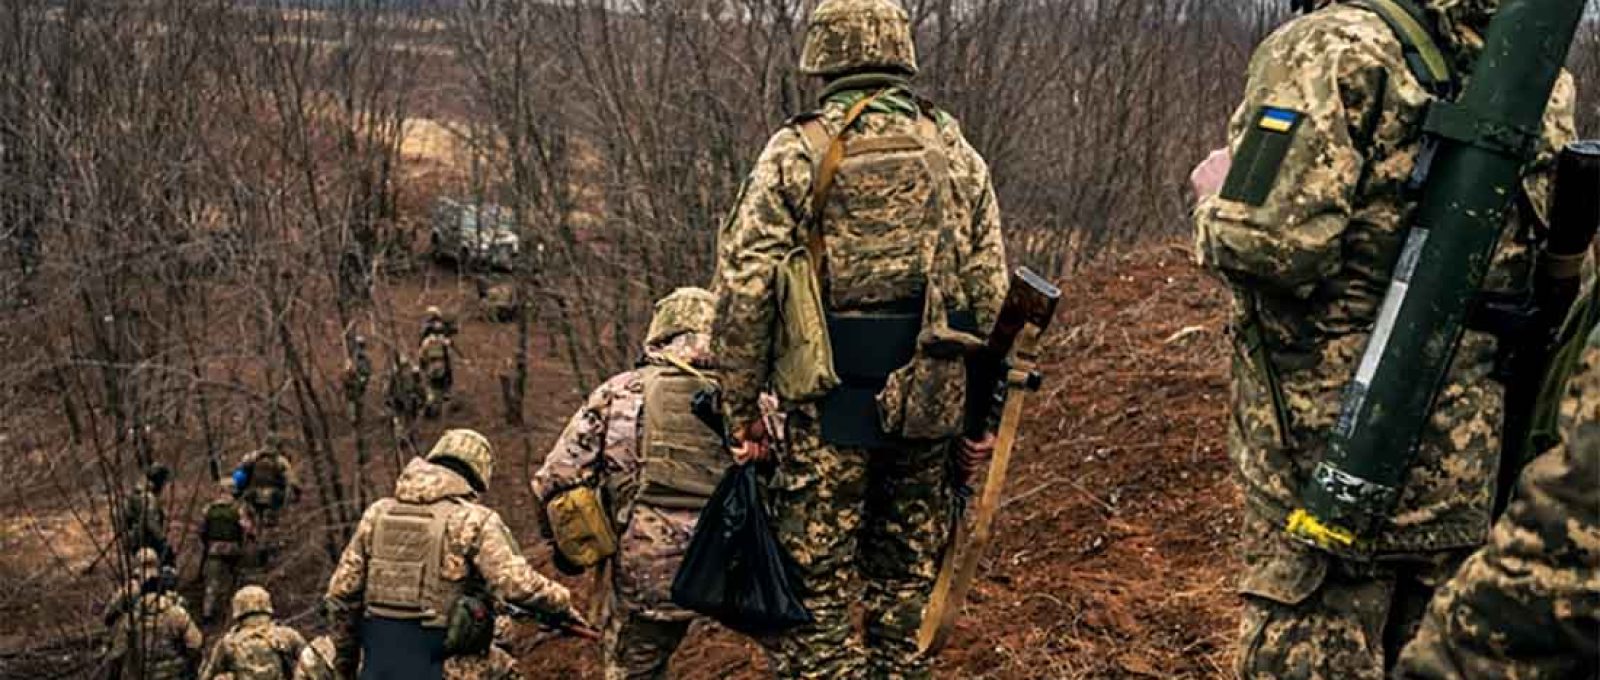 O treinamento militar do exército ucraniano continua no Oblast de Donetsk (Anadolu).